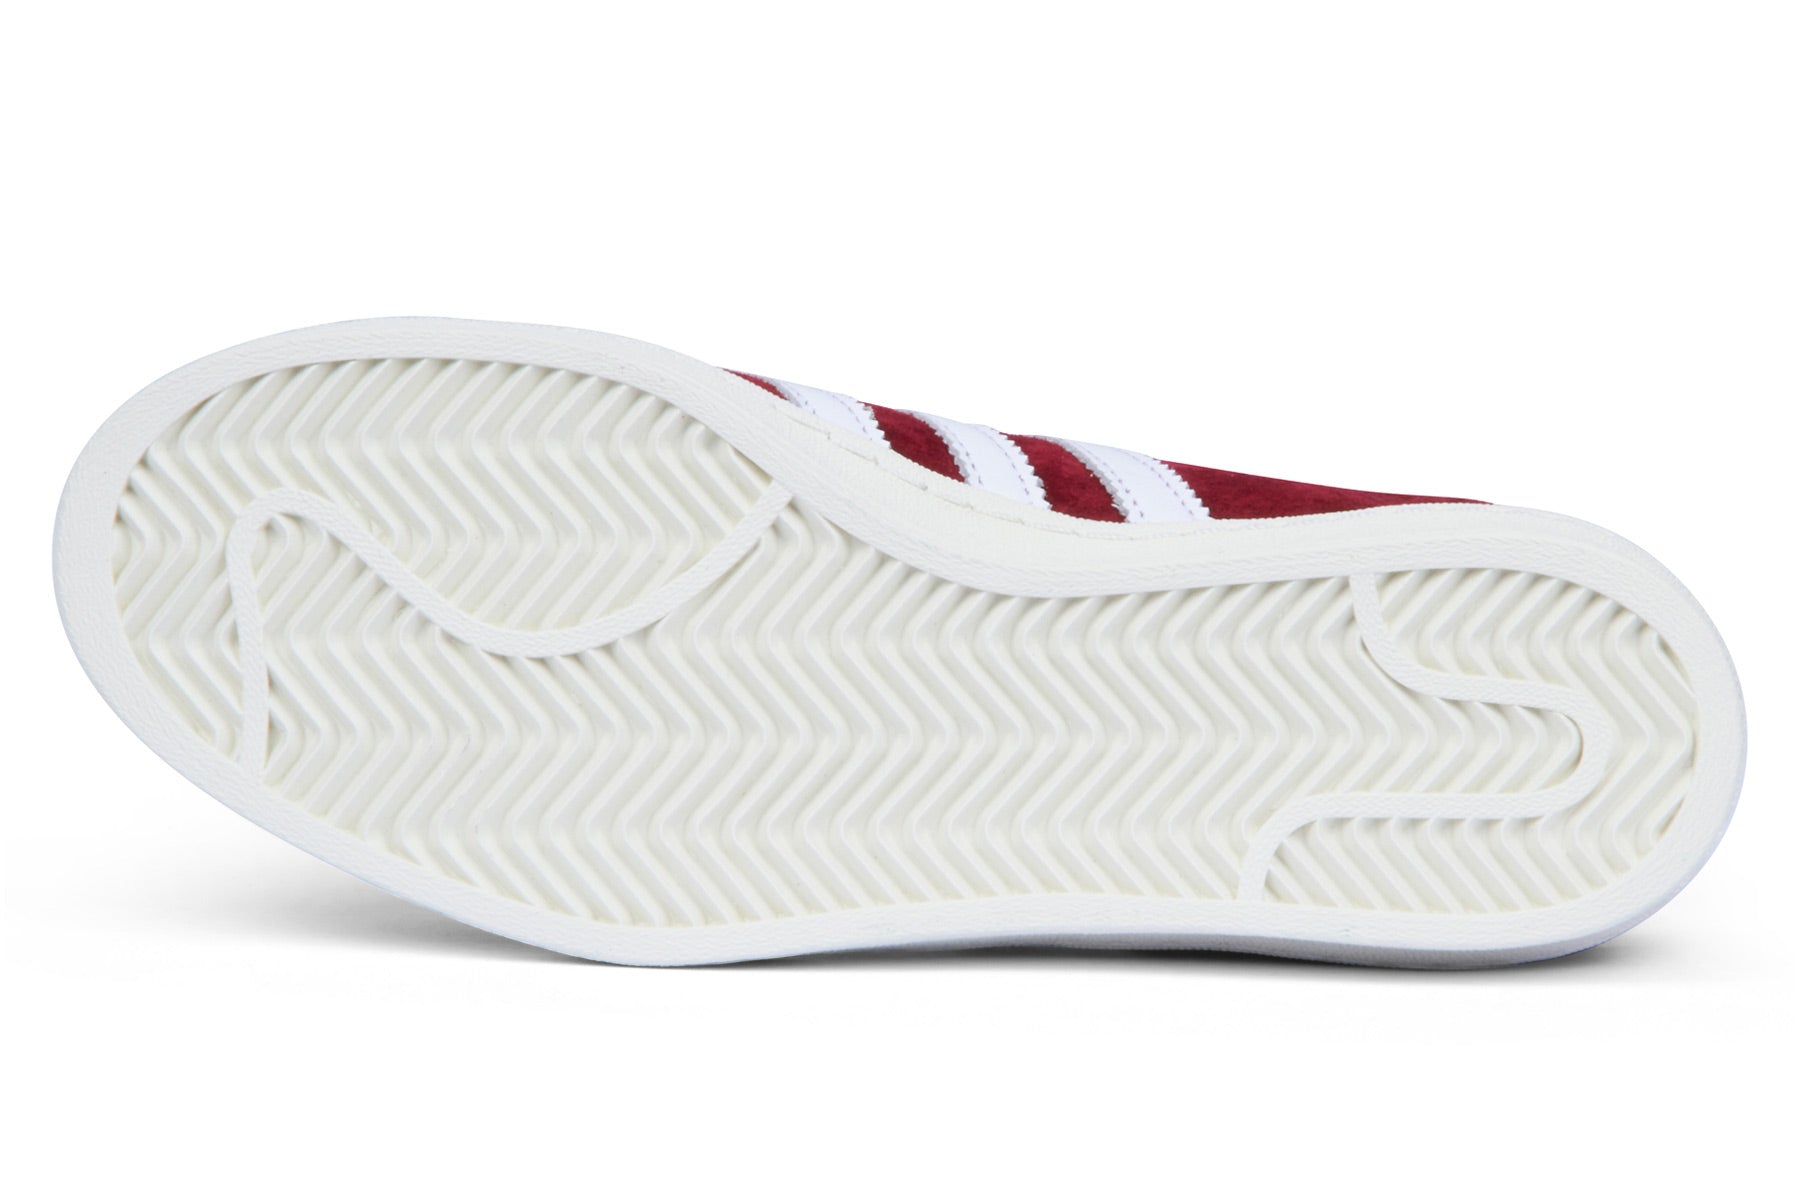 Adidas Campus 80s - Collegiate Burgundy / Footwear White / Chalk White